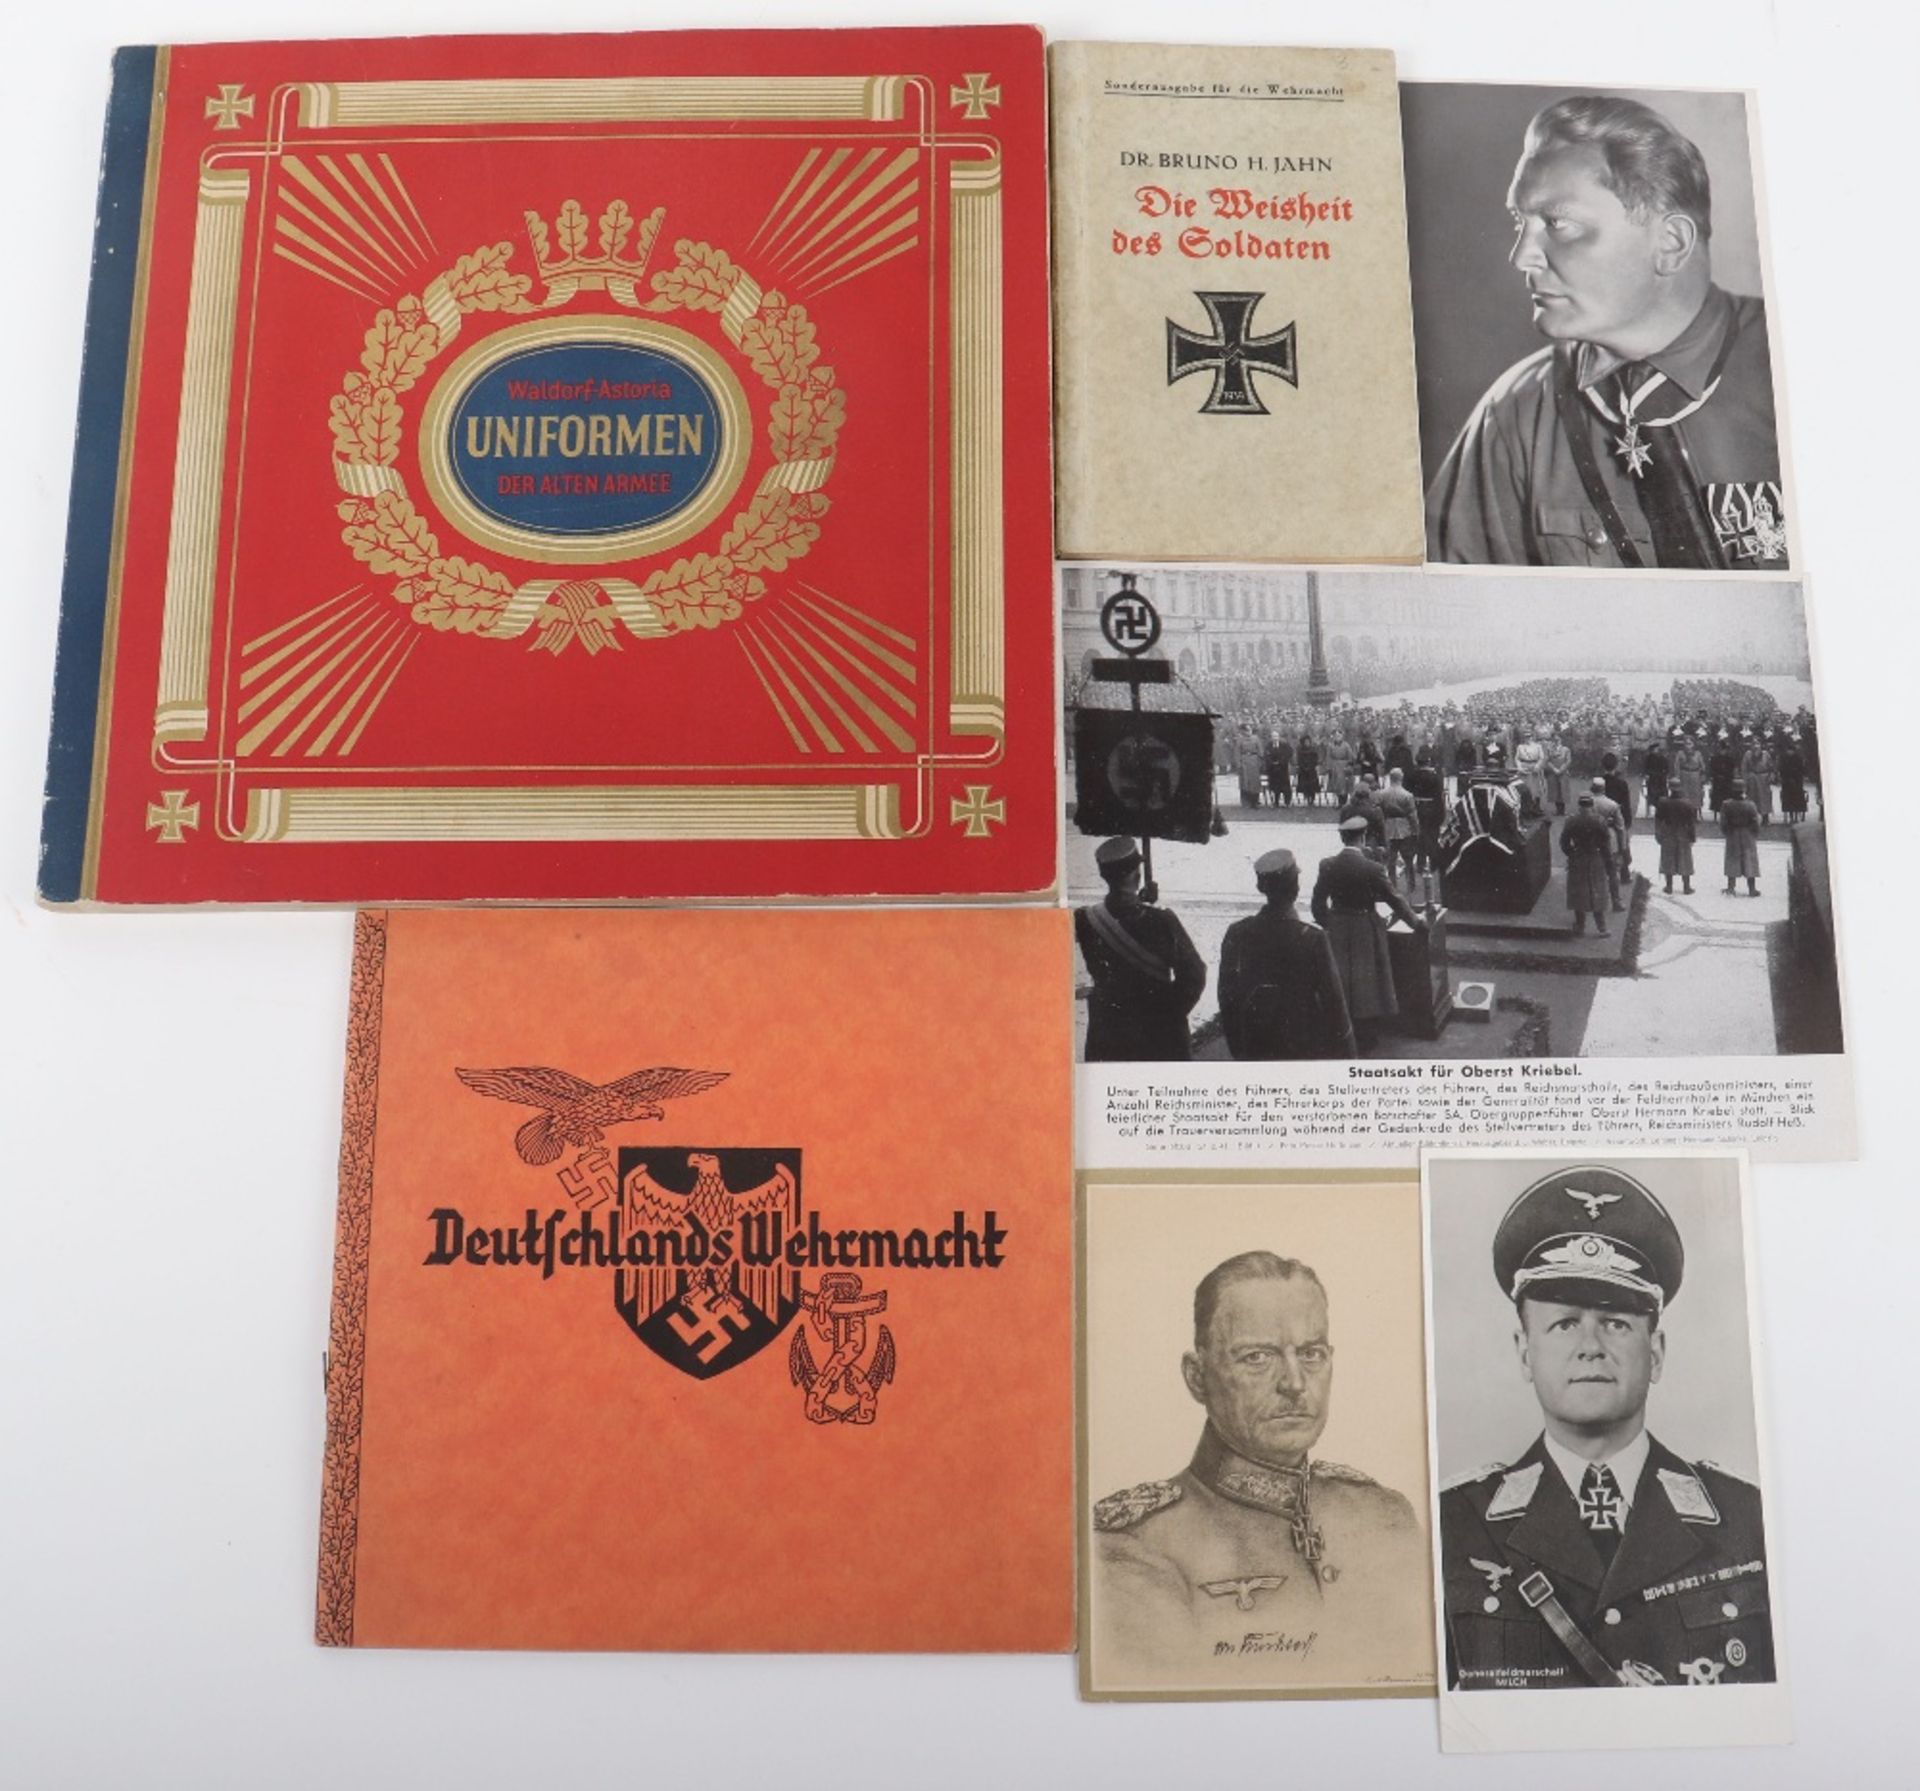 Third Reich Period Publication “Deutschlands Wehrmacht”